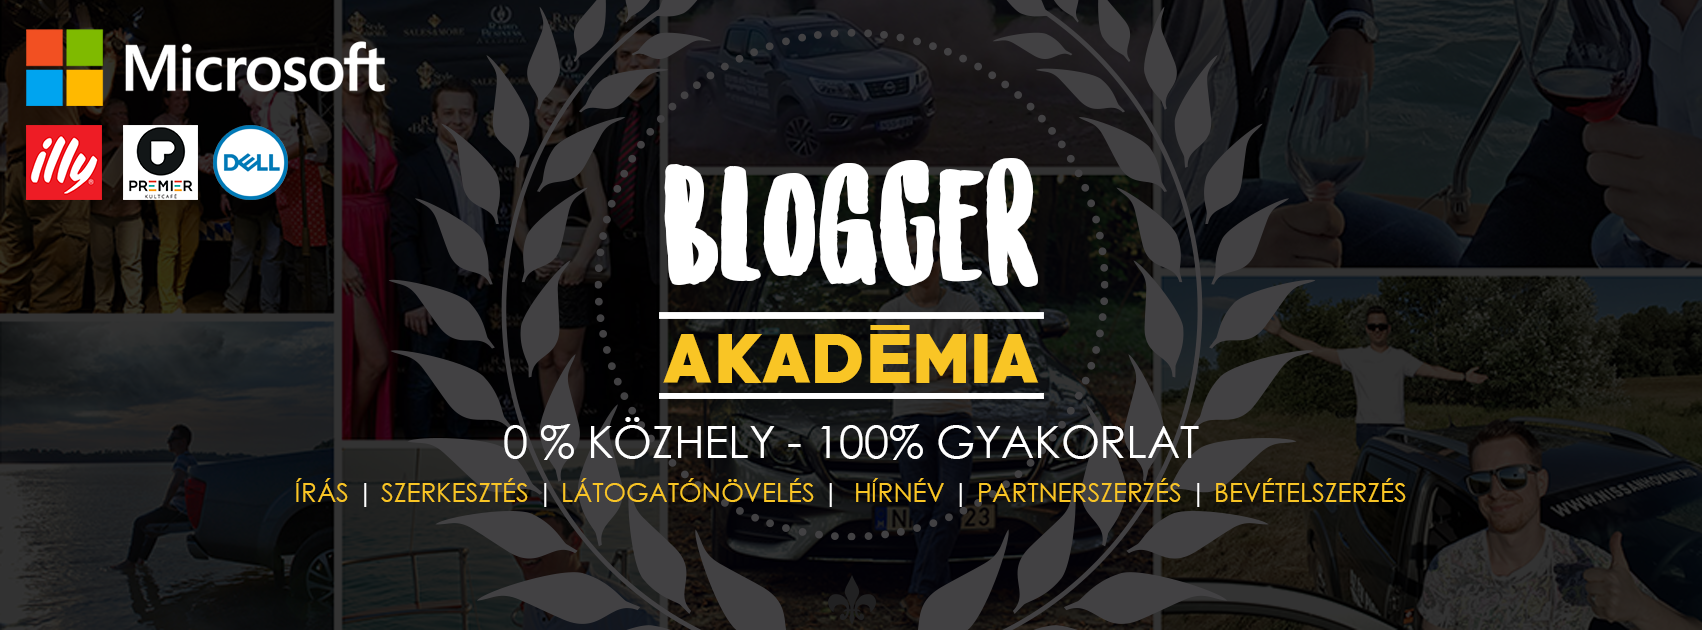 blogger_akademia.png